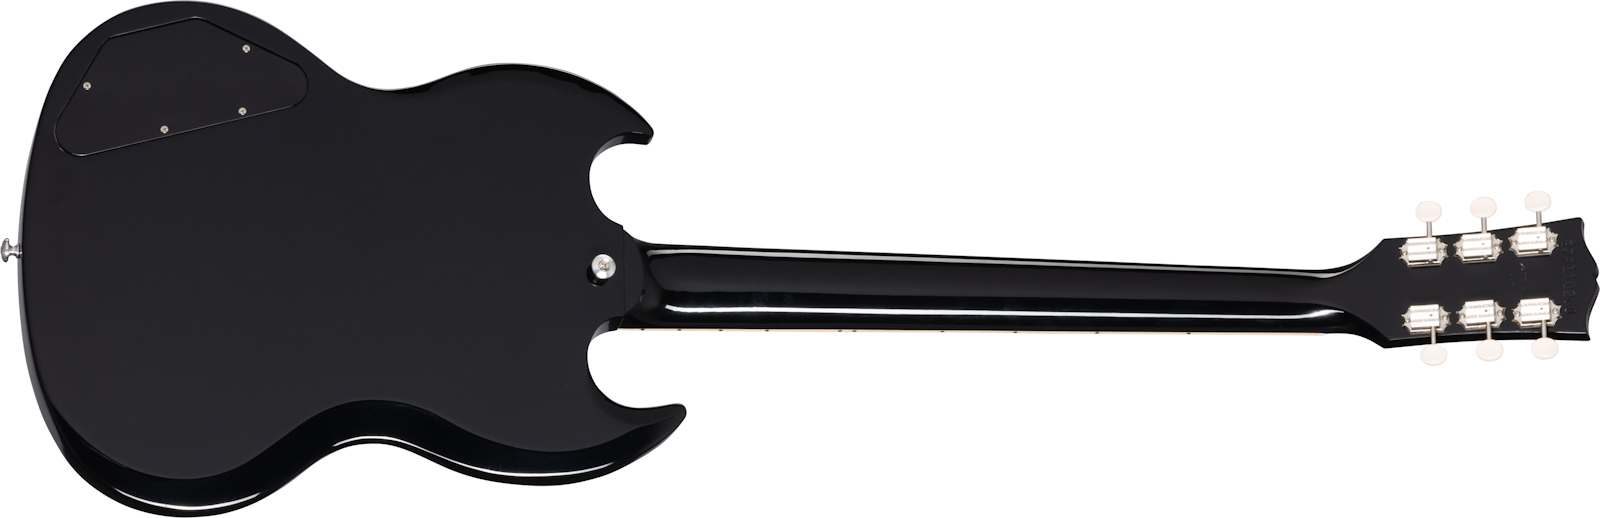 Gibson Sg Special Original 2021 2p90 Ht Rw - Ebony - Guitarra eléctrica de doble corte. - Variation 1